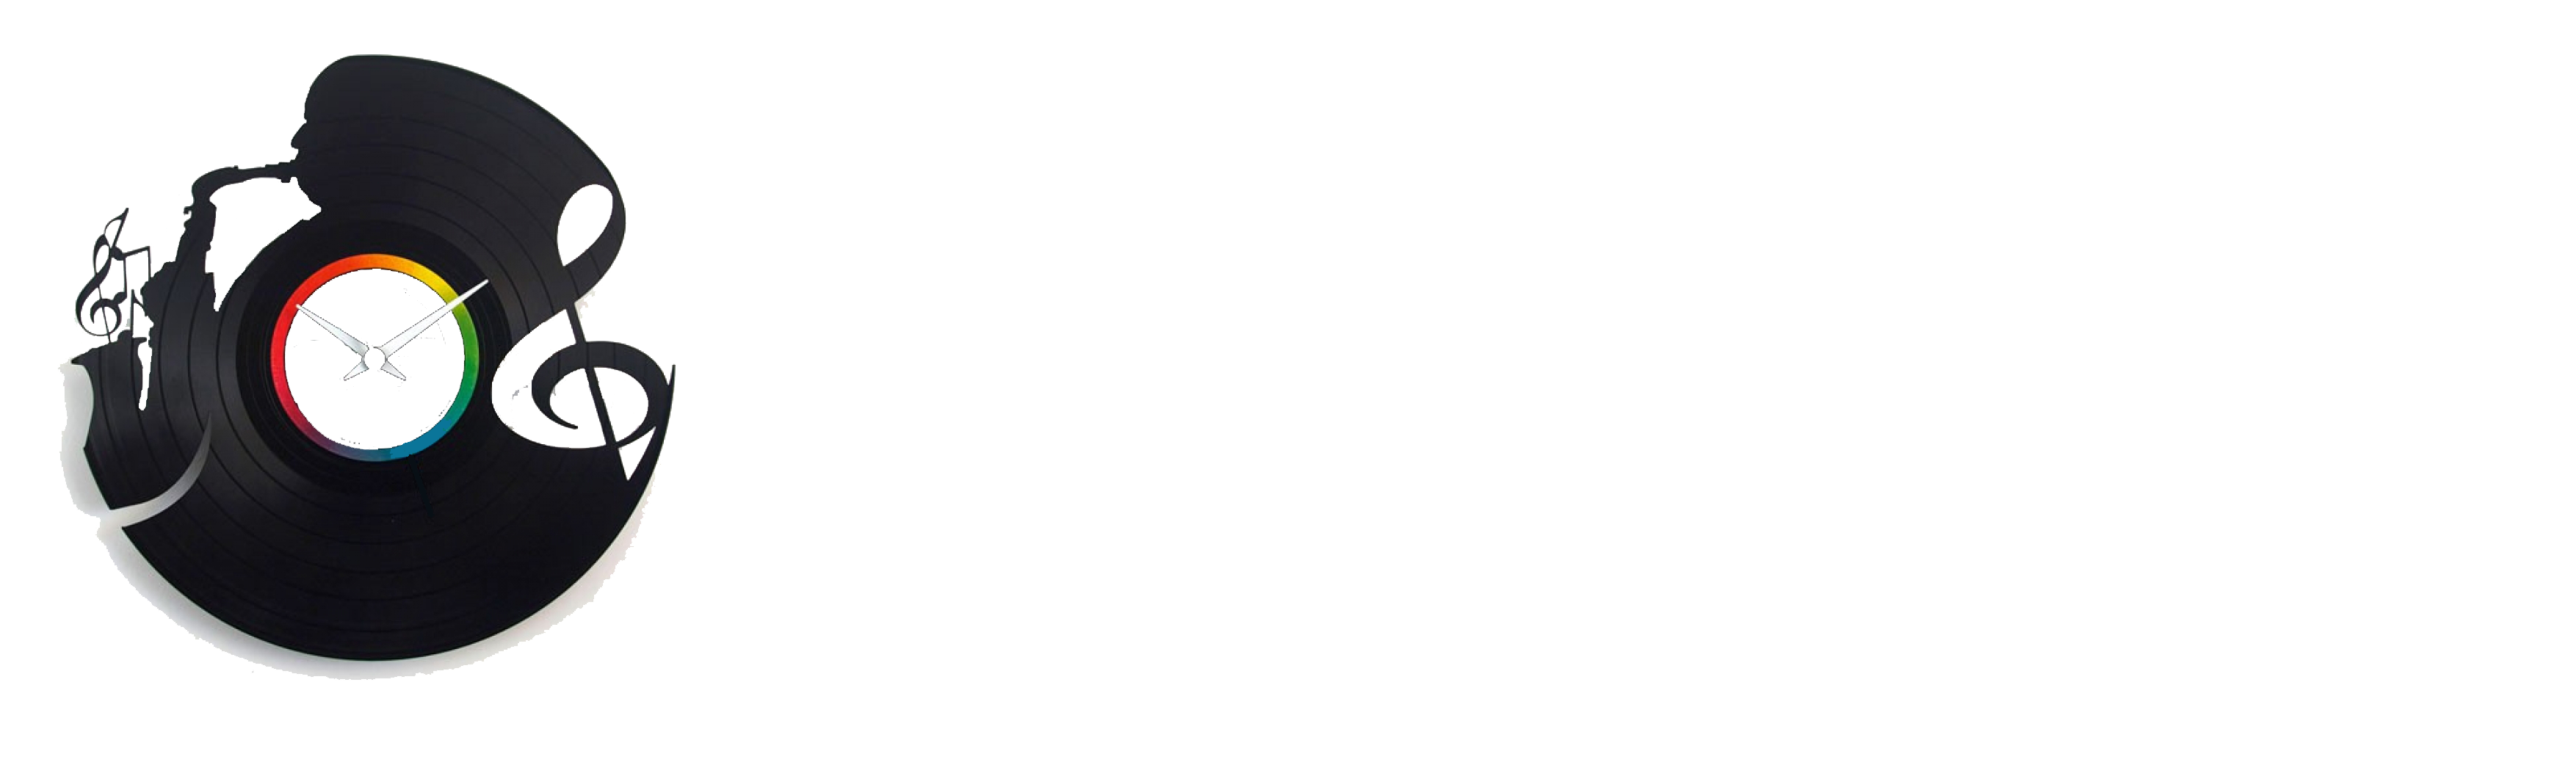 1050chum.com